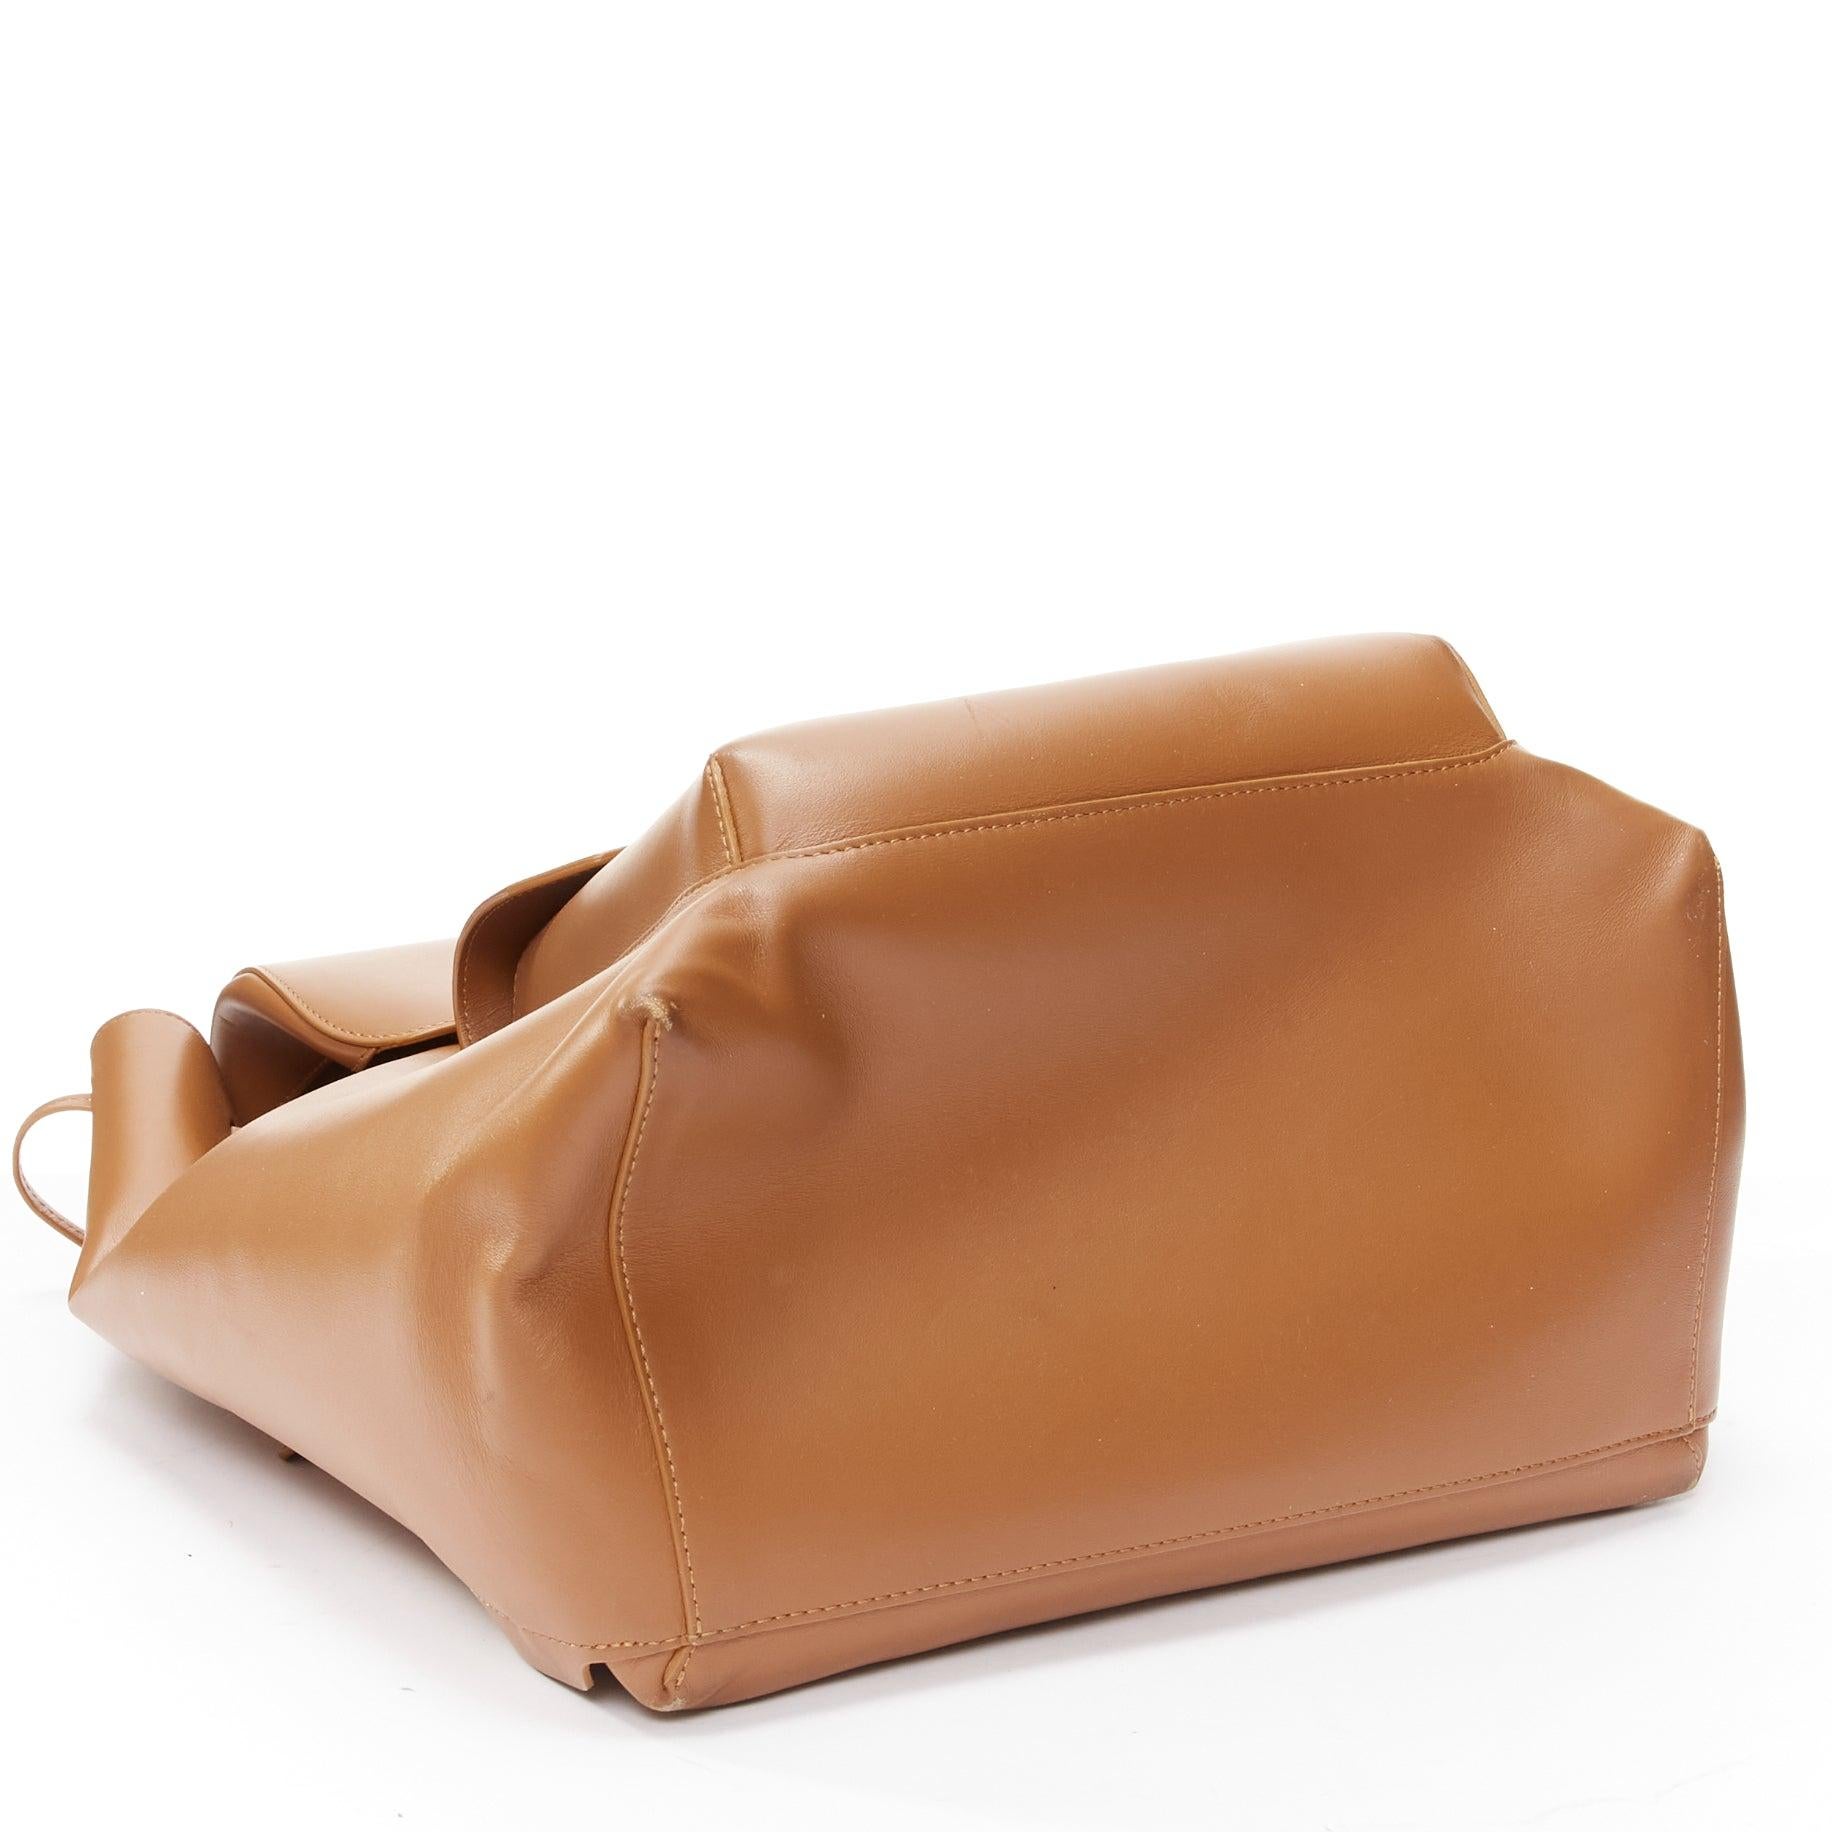 MANSUR GAVRIEL vegetable tanned calfskin leather minimal classic backpack bag 6